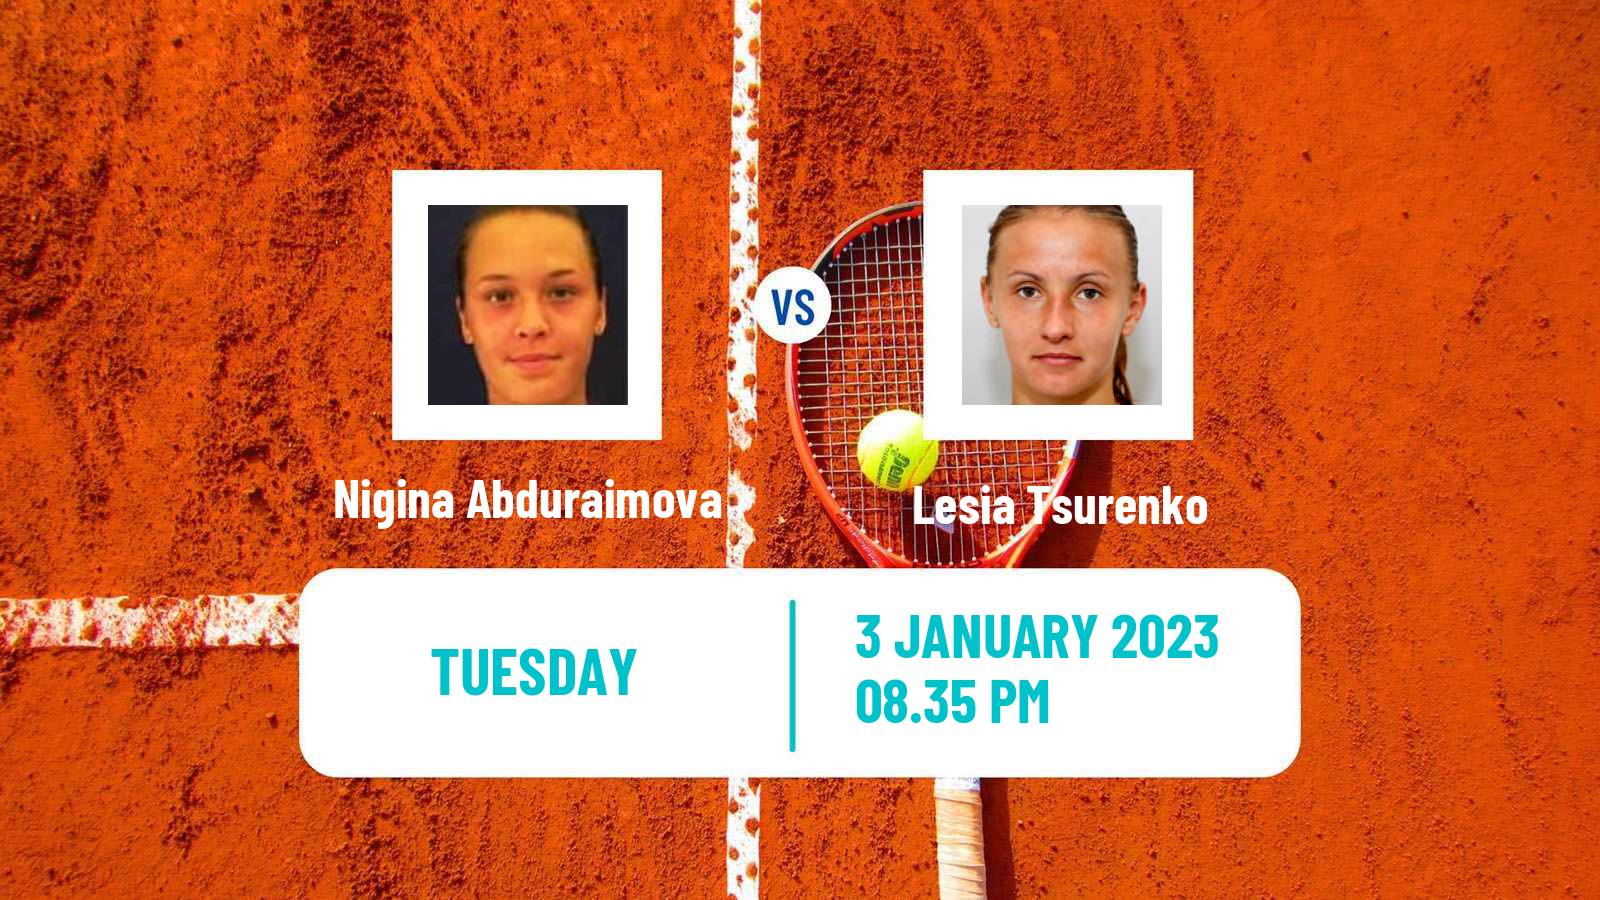 Tennis ITF Tournaments Nigina Abduraimova - Lesia Tsurenko